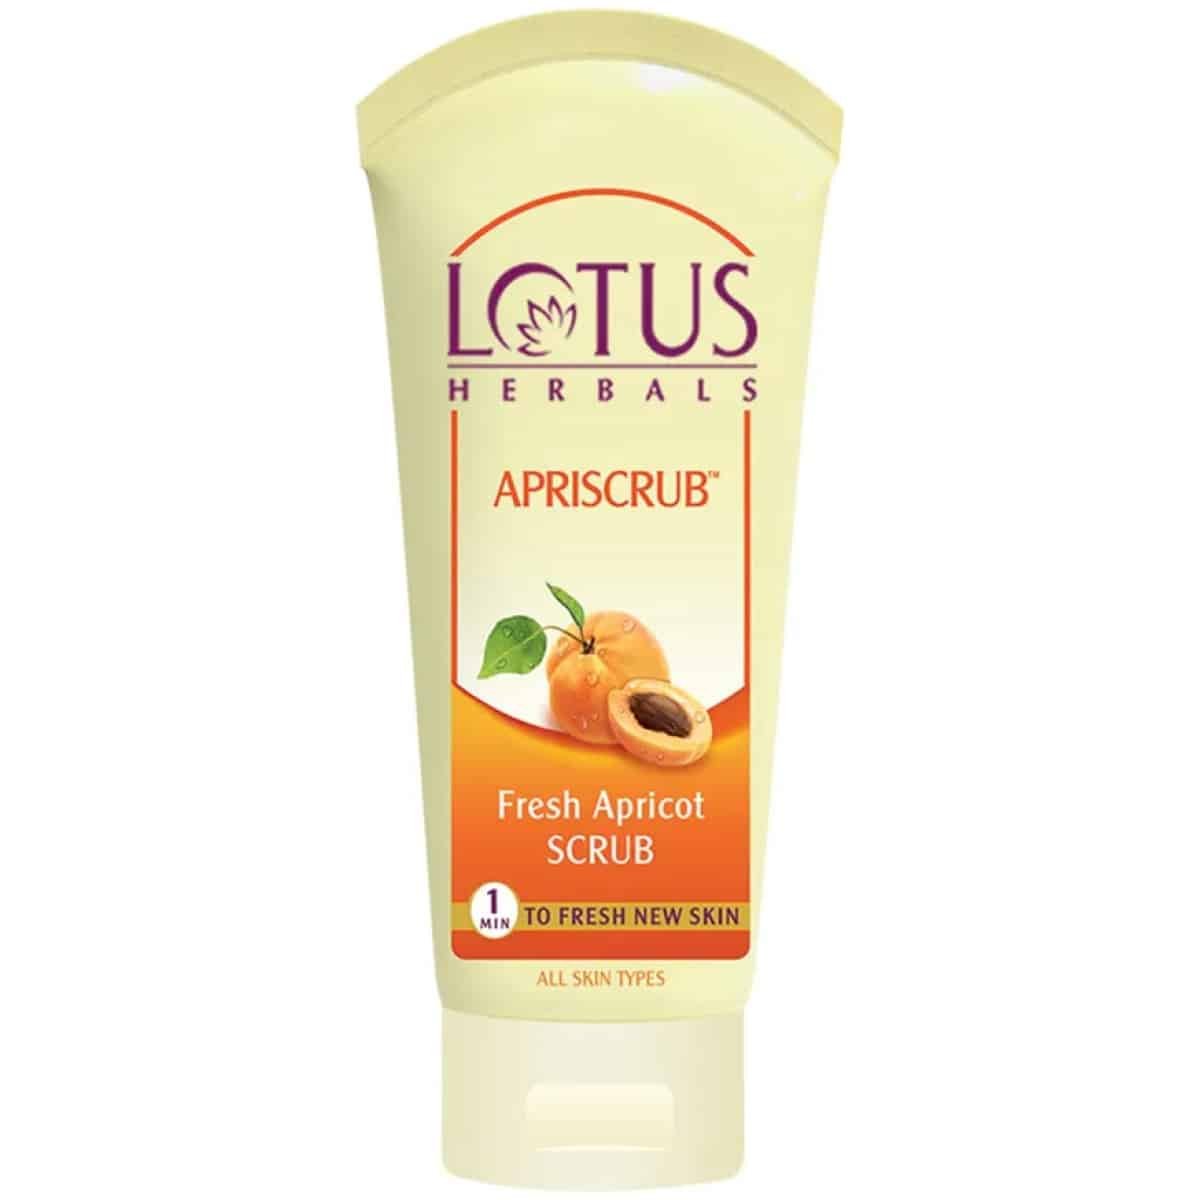 Lotus herbals APRISCRUB™ Fresh Apricot Scrub 180g